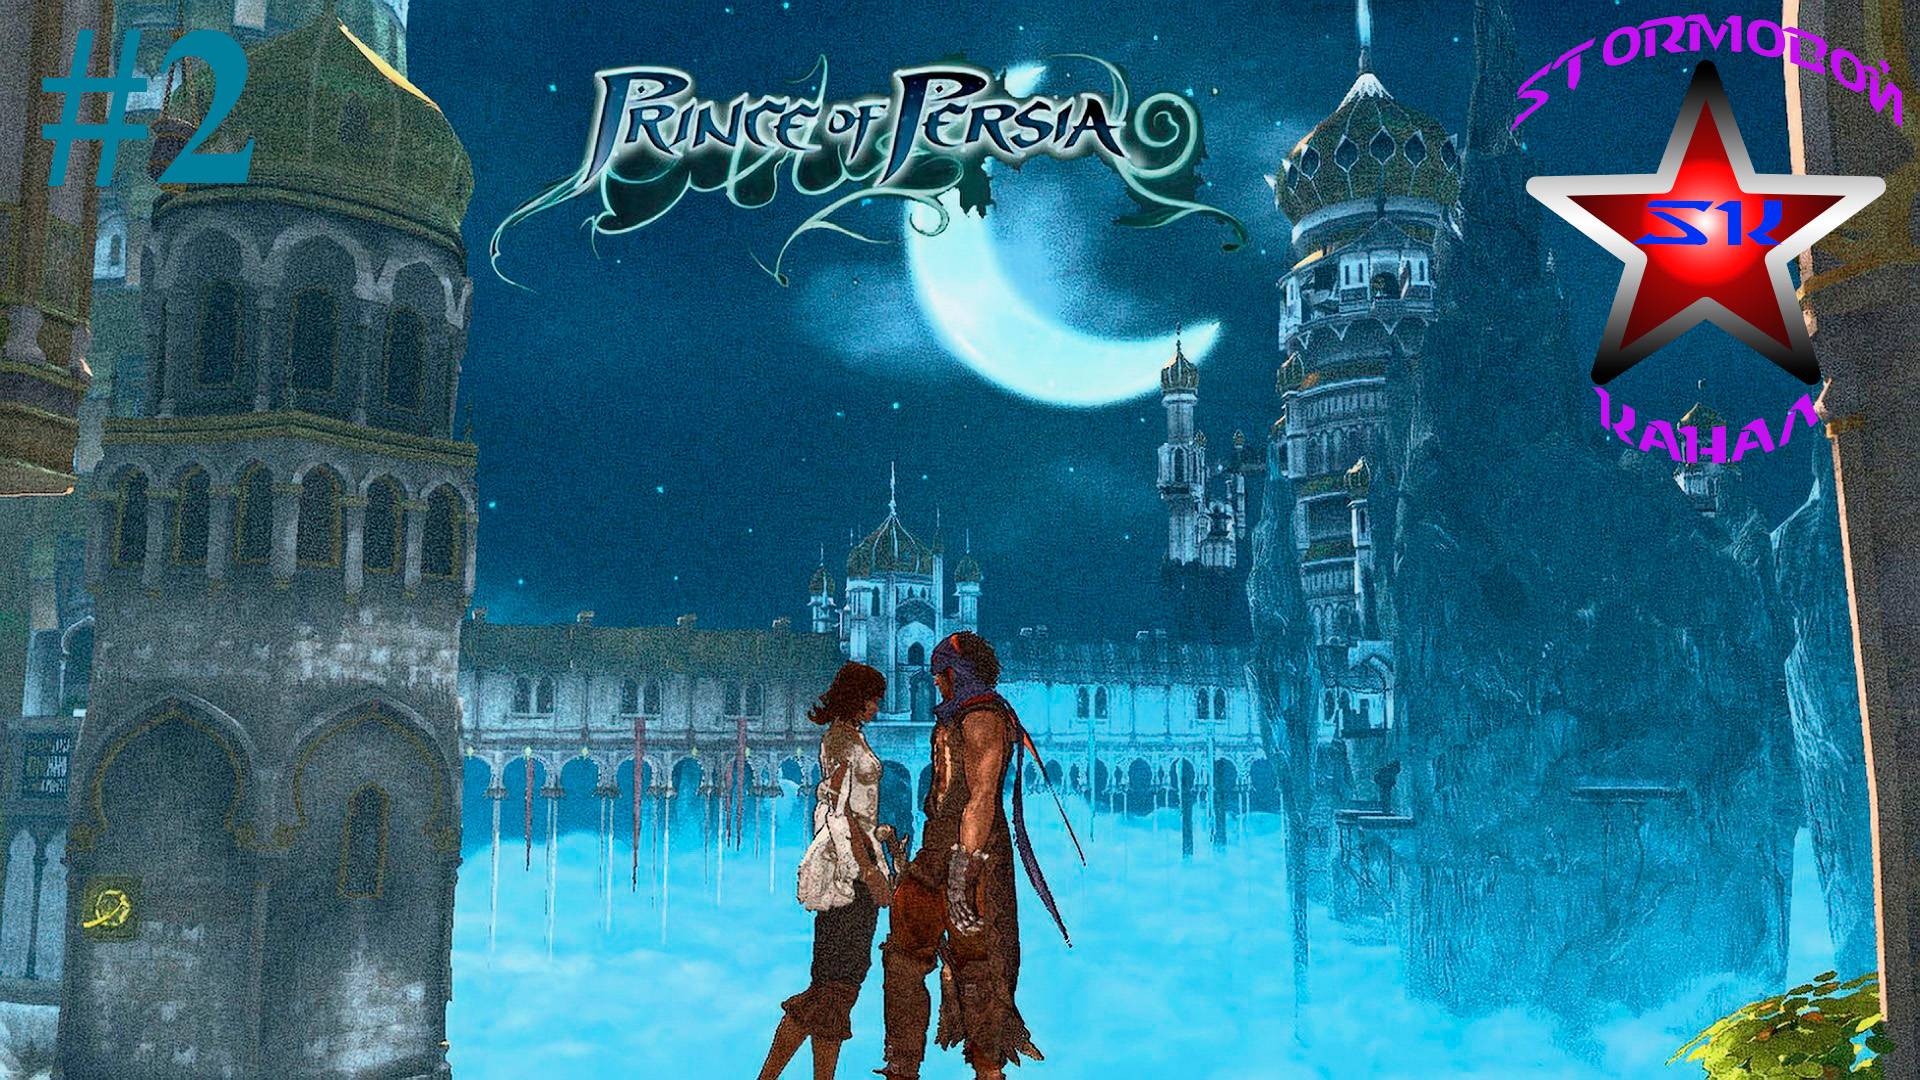 "ВСПОМИНАЯ КЛАССИКУ" Prince of Persia 2008 Прохождение на Русском Часть#2 Стрим 2 |Walkthrough|Стрим